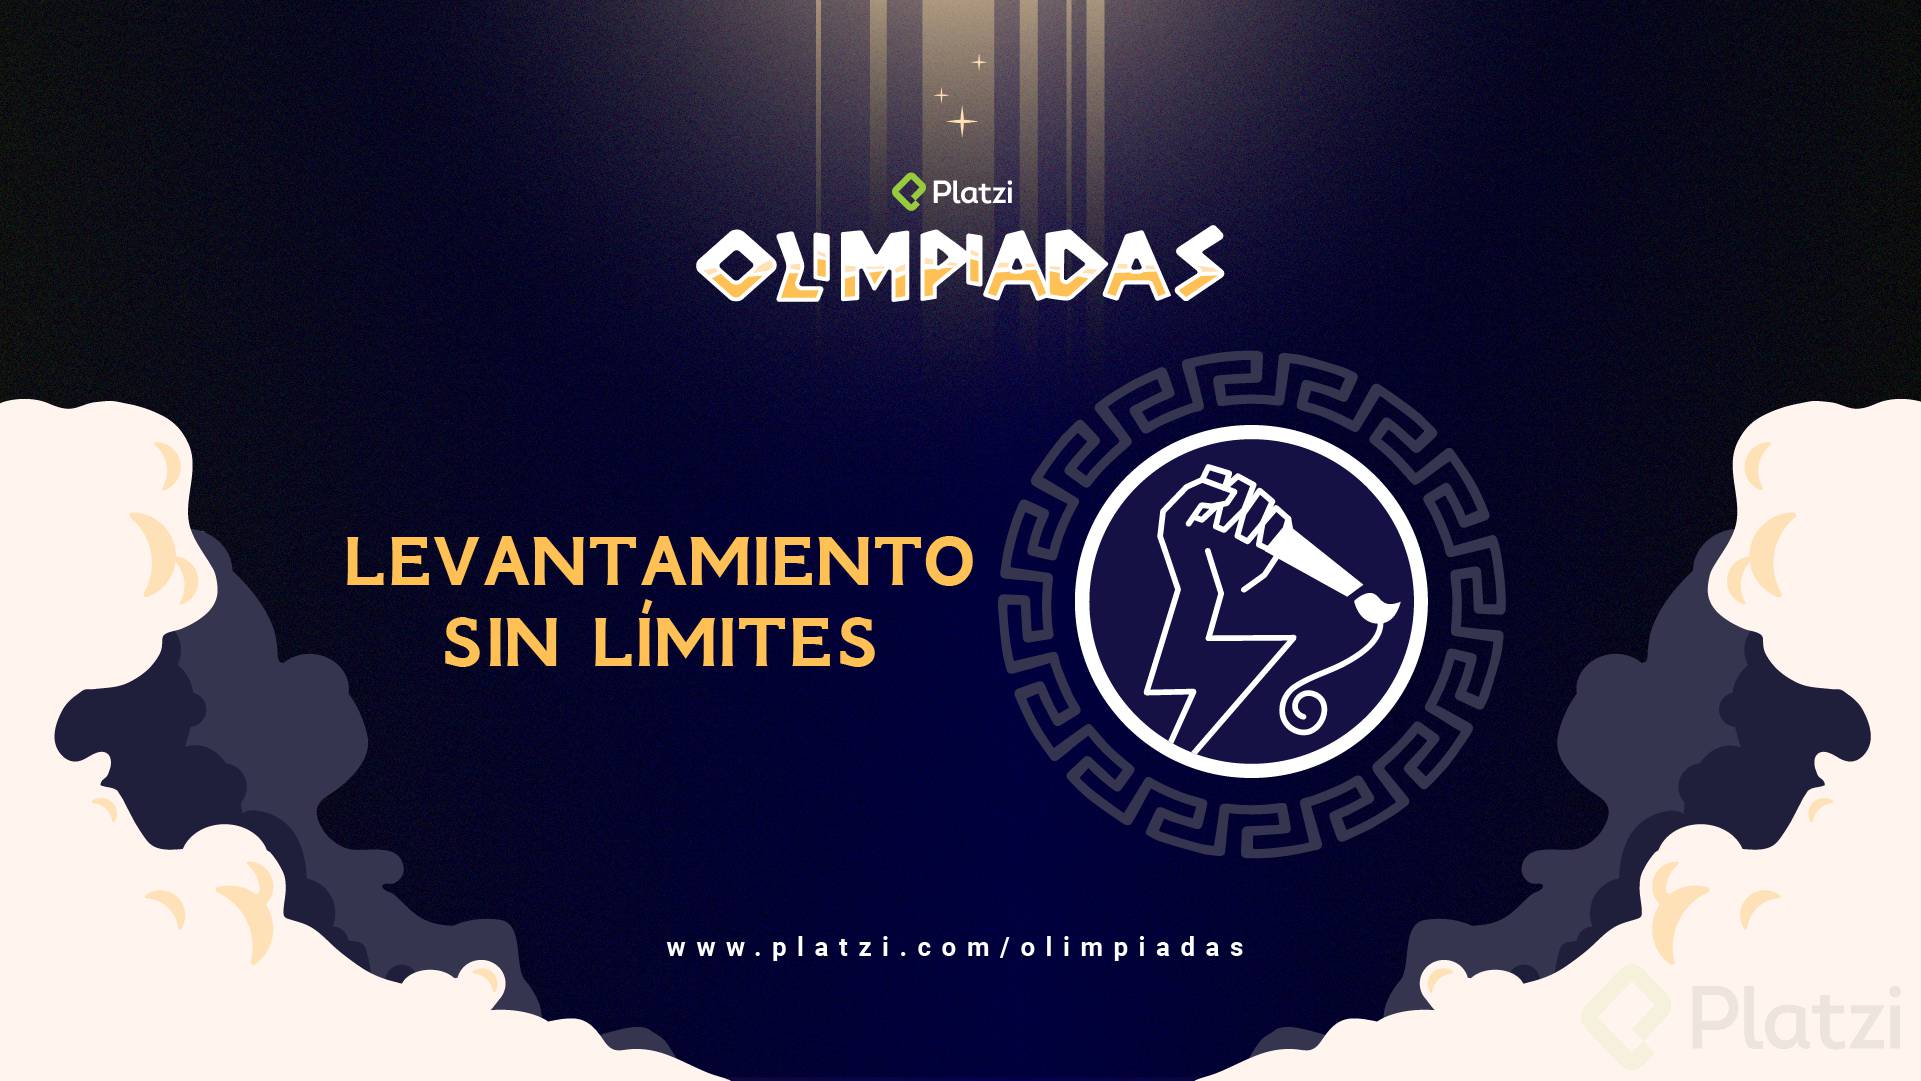 Olimpiadas_Levantamiento_Limites_Wallpaper.png